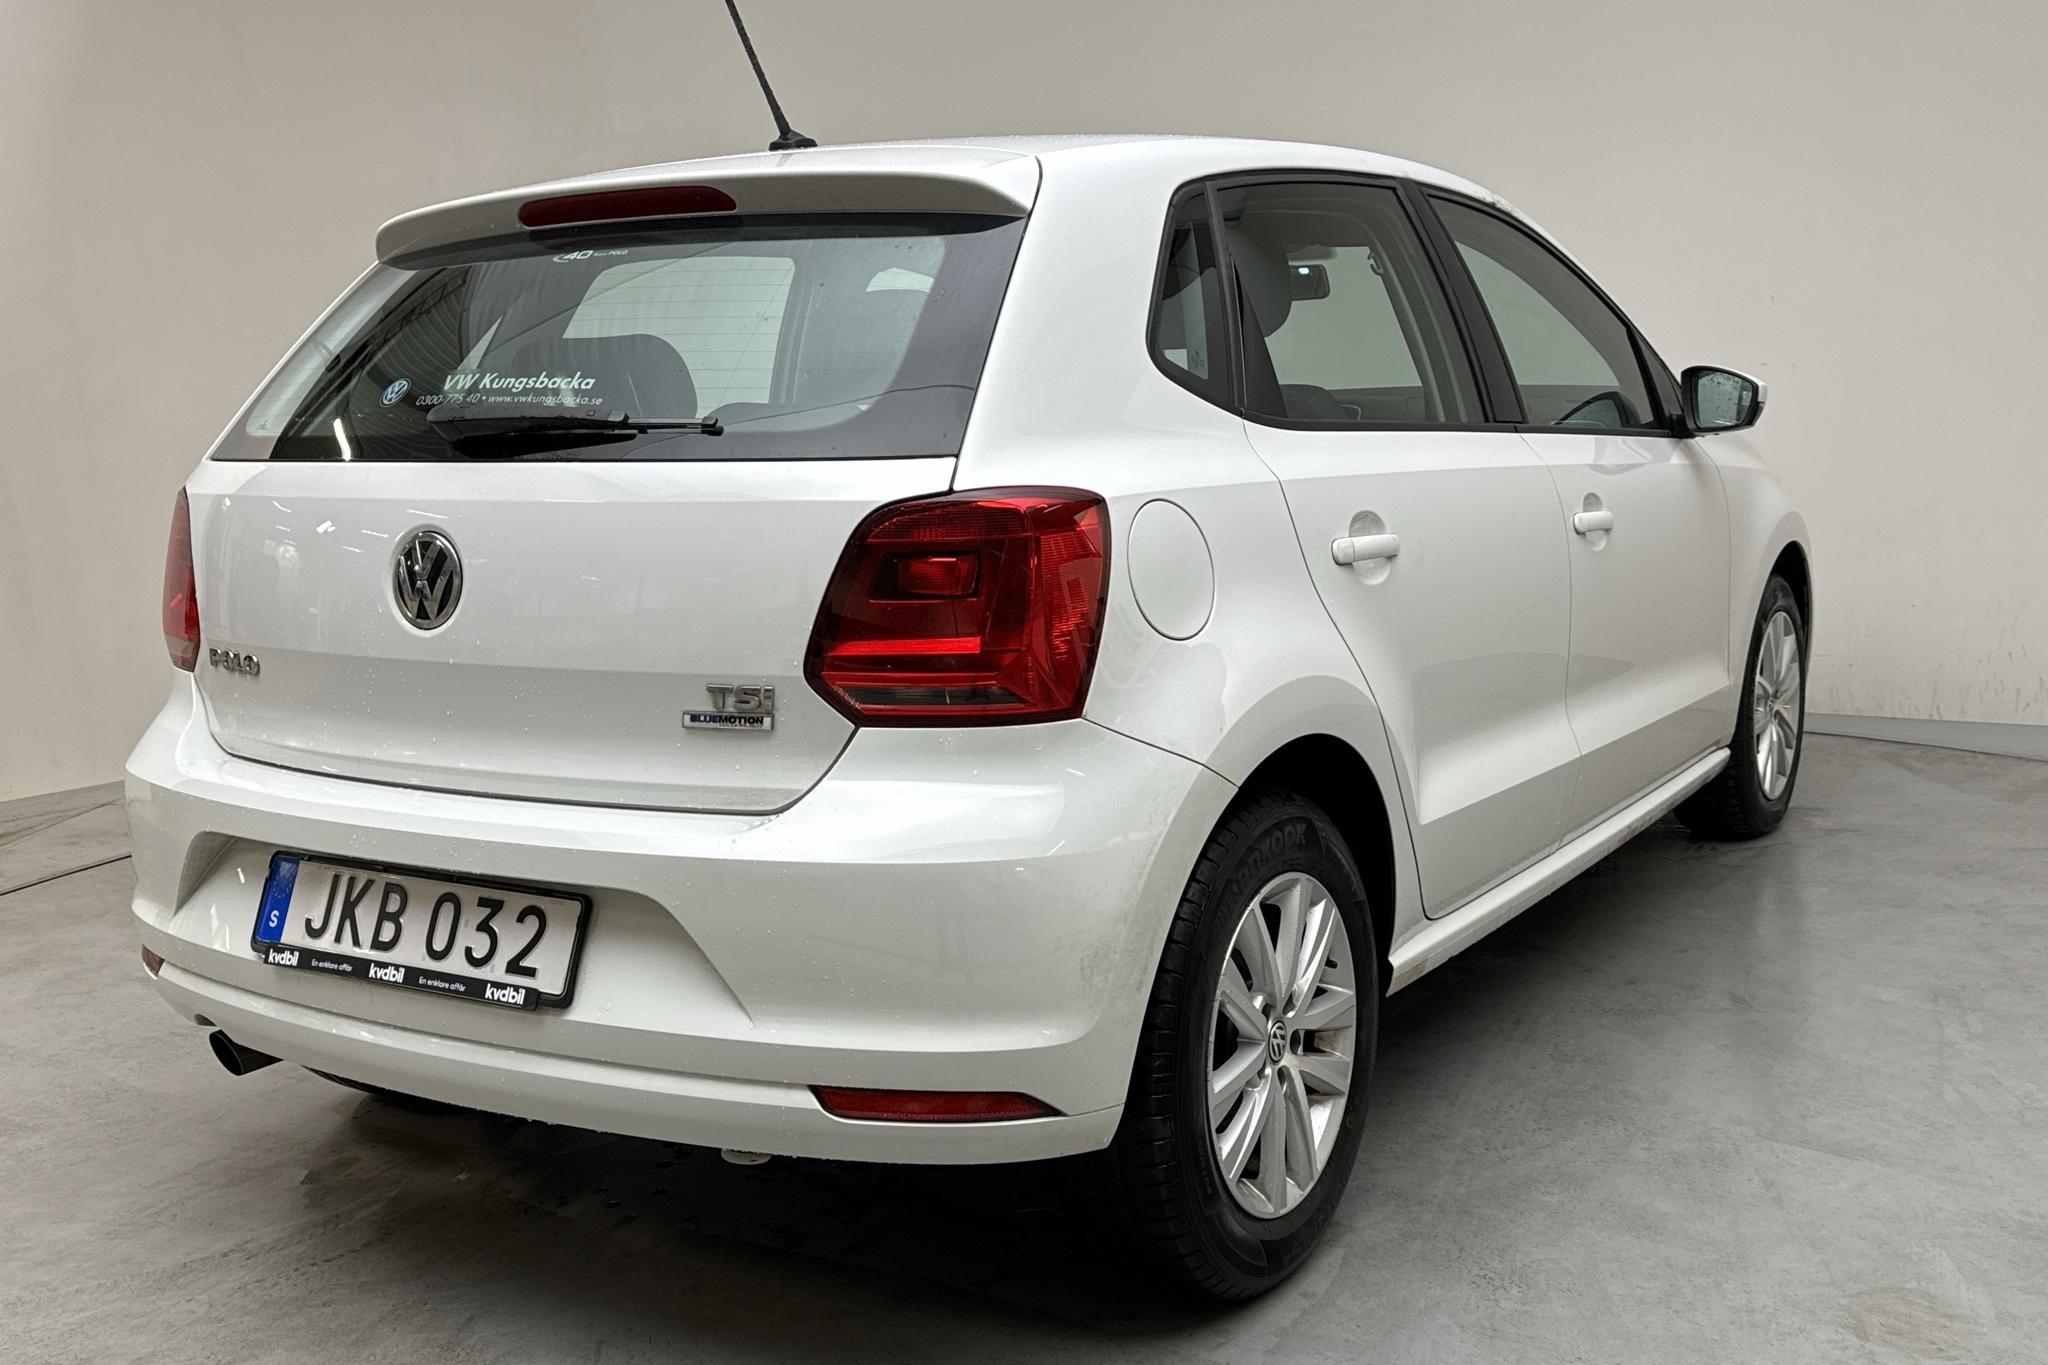 VW Polo 1.2 TSI 5dr (90hk) - 84 380 km - Manual - white - 2016